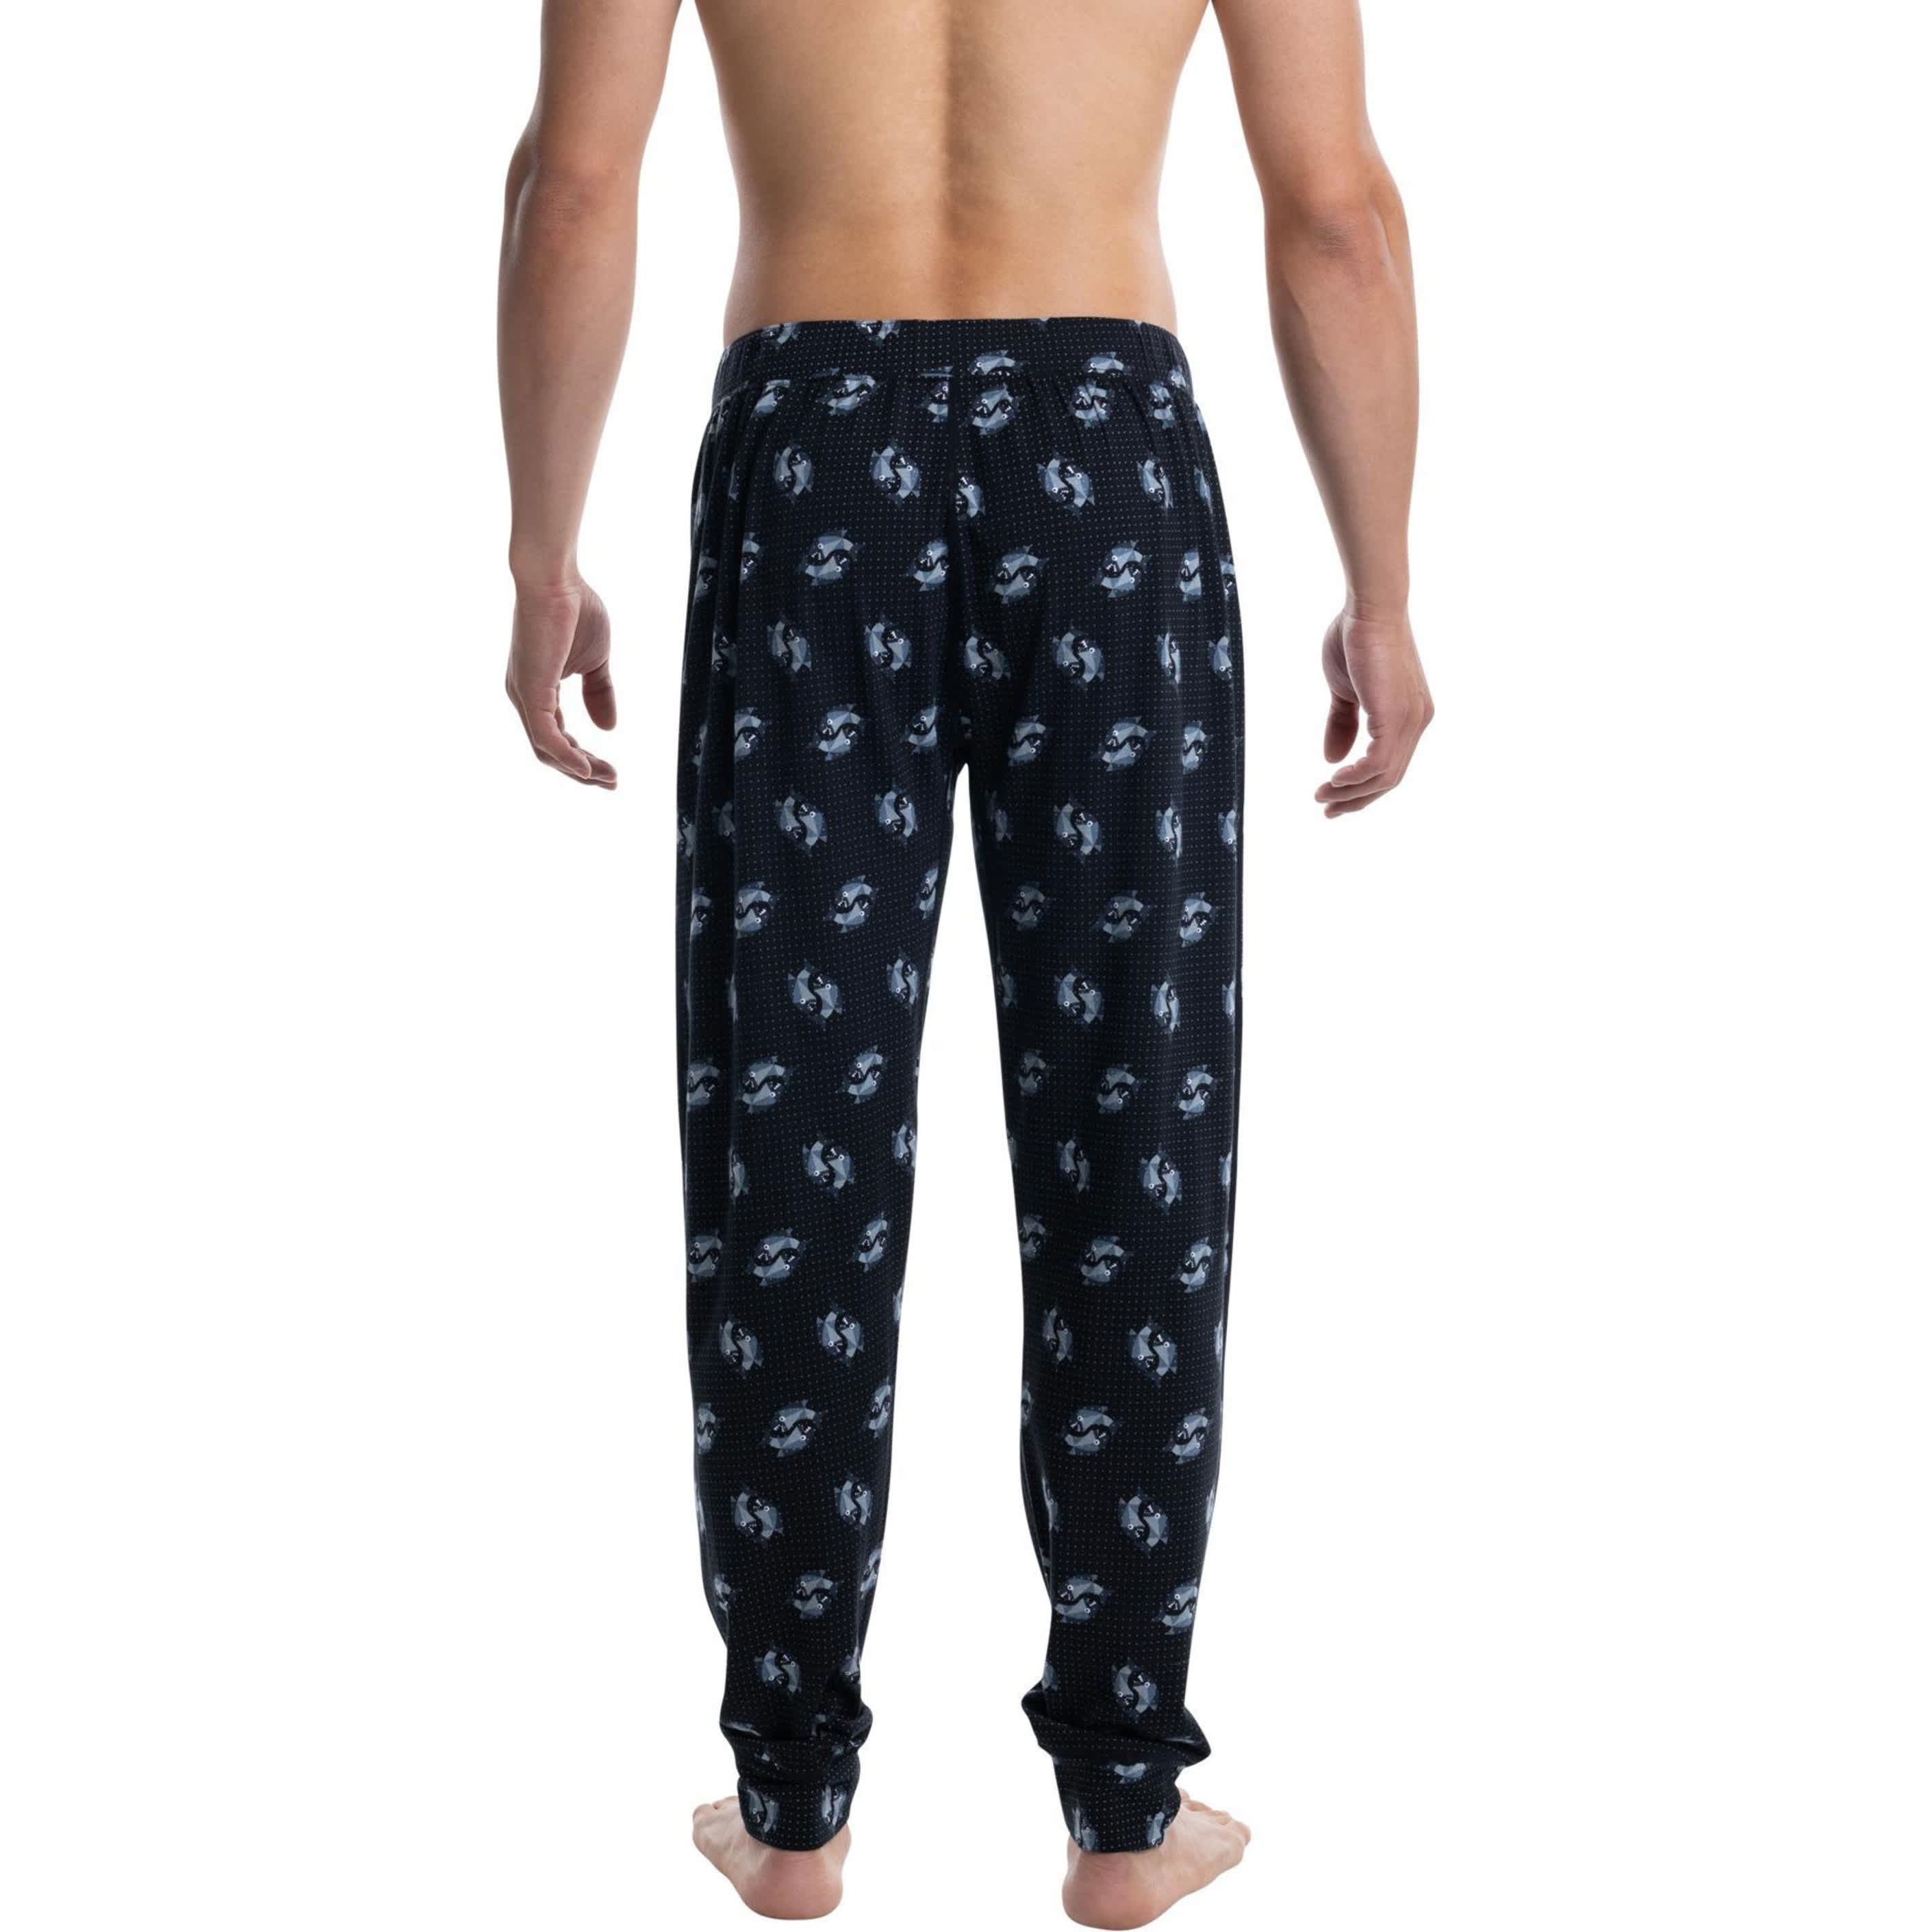 SAXX® Men’s DropTemp™ Cooling Sleep Pant